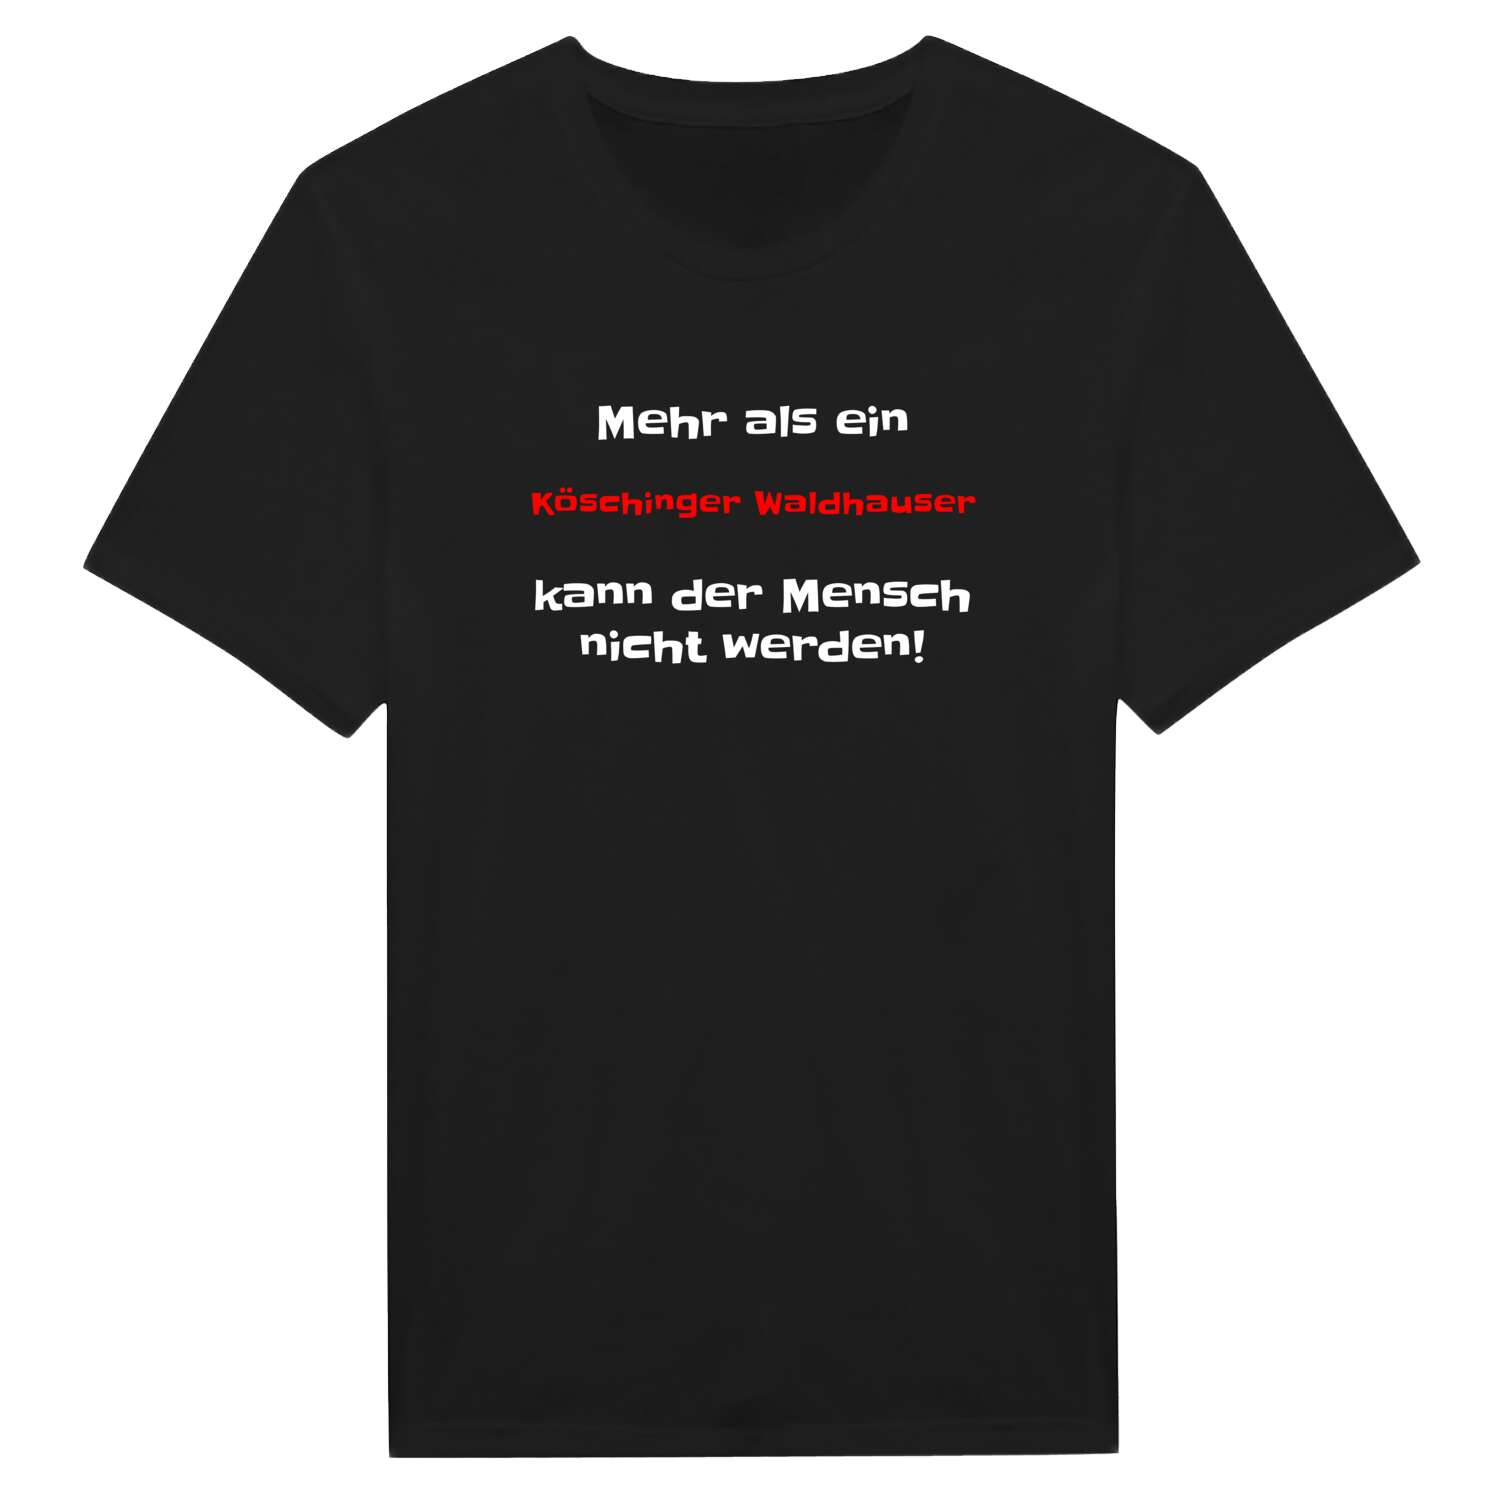 Köschinger Waldhaus T-Shirt »Mehr als ein«